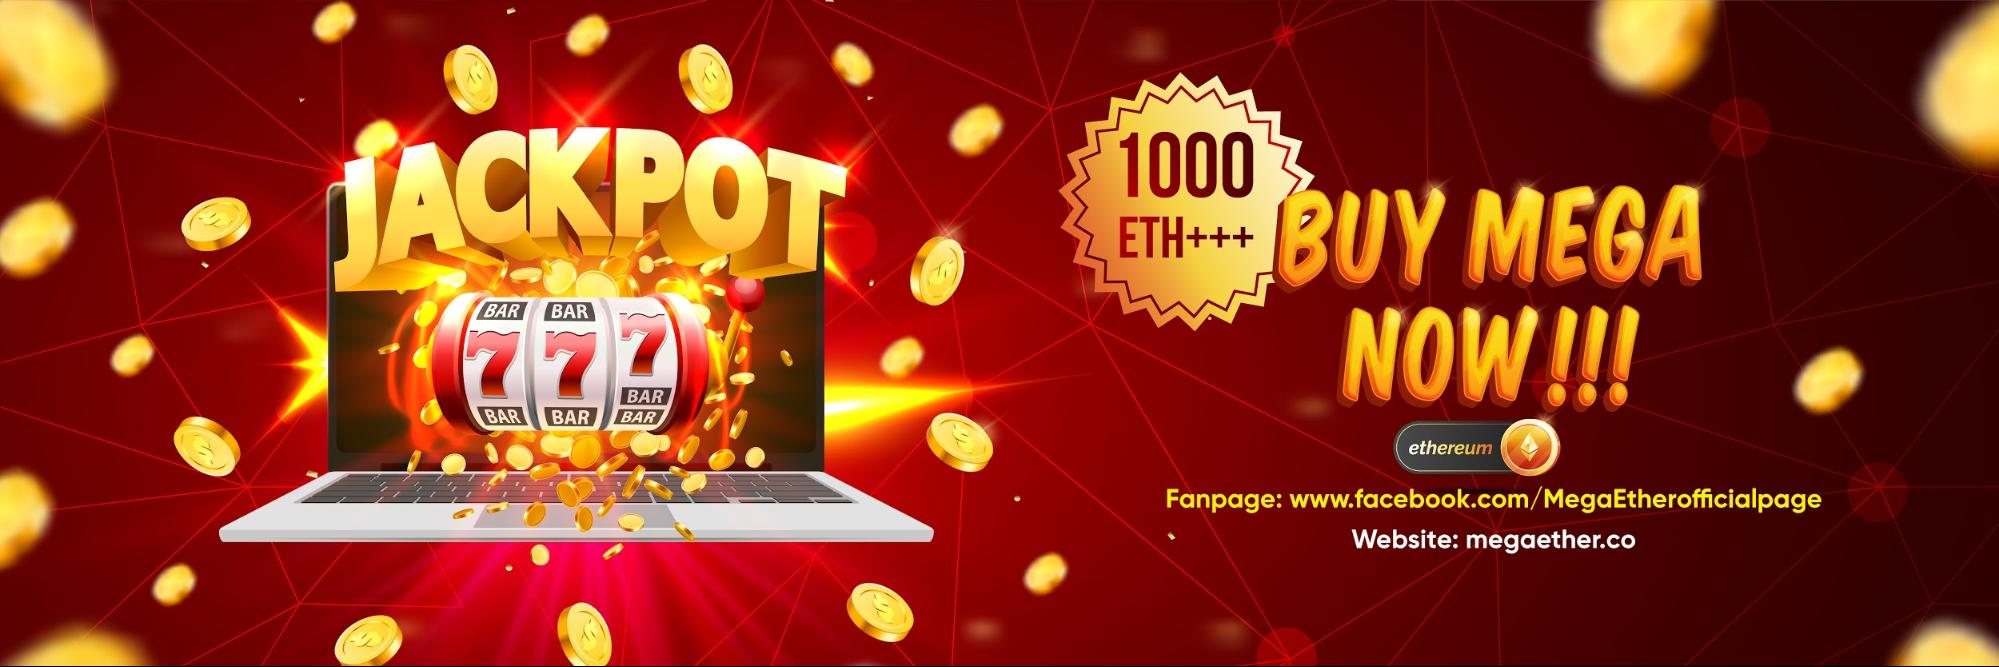 Blockchain Lottery Platform MegaEther Announces 1000 ETH Mega Prize